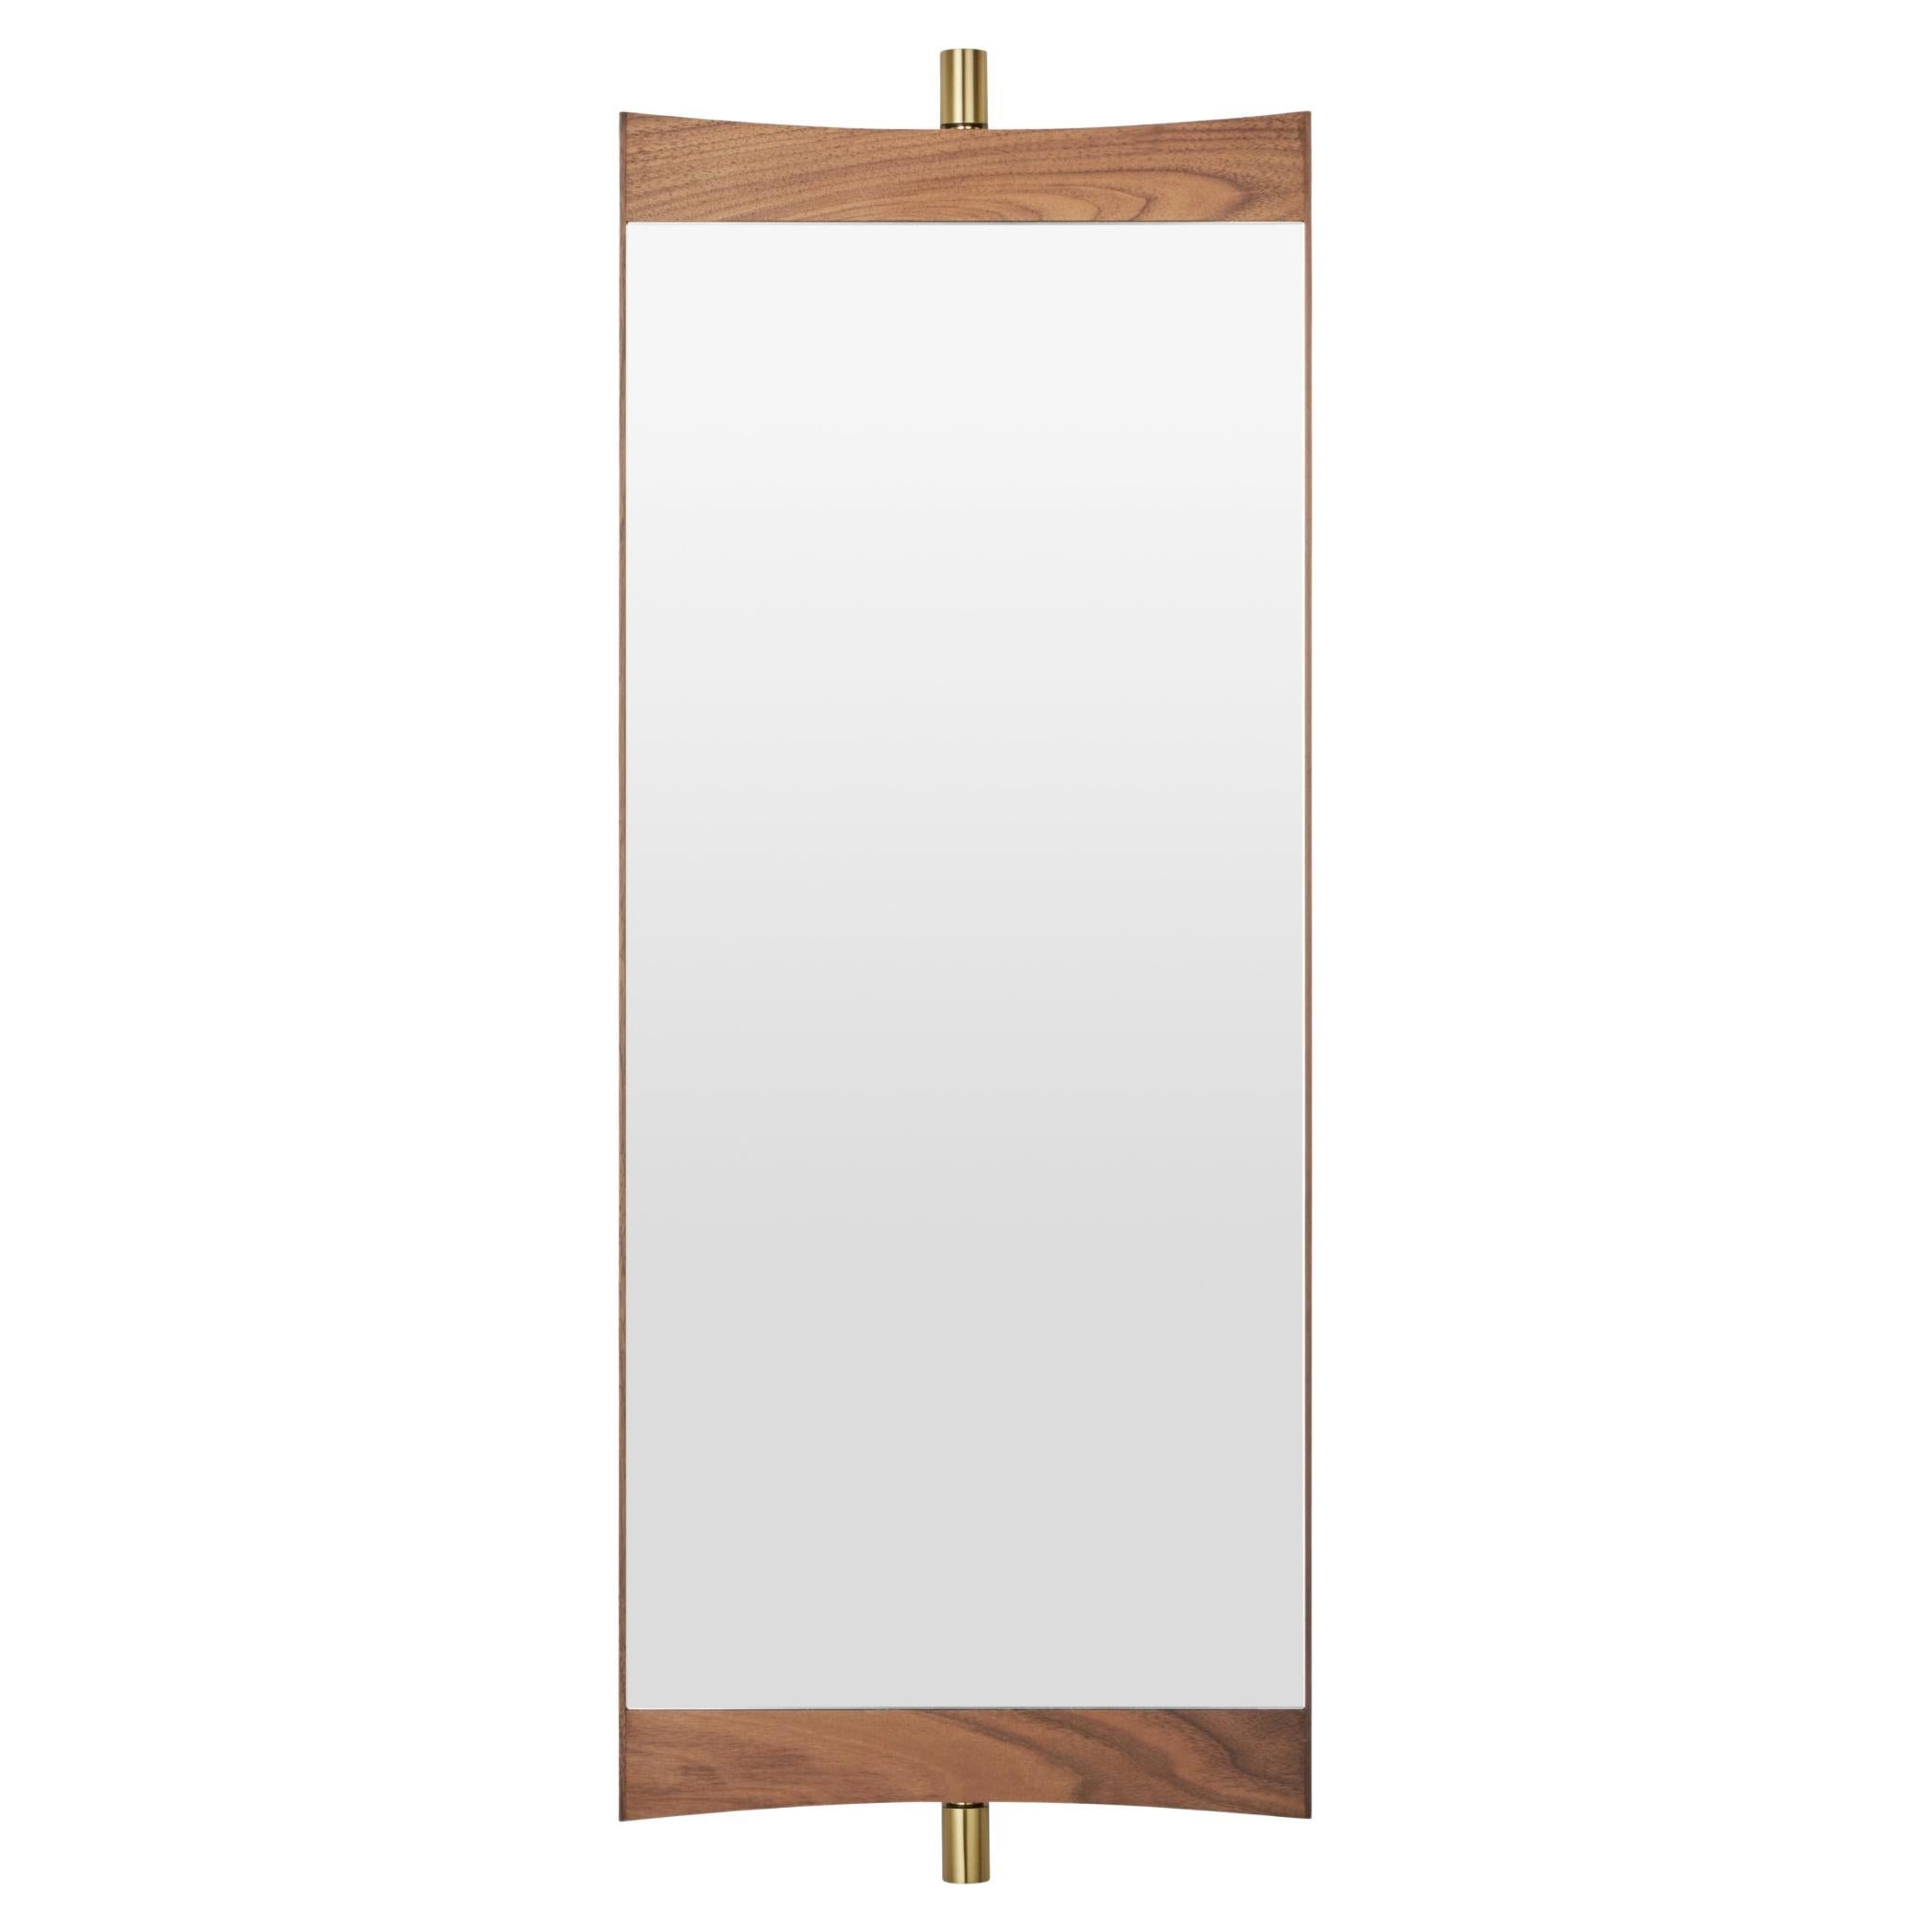 GamFratesi Vanity Mirror for GUBI For Sale